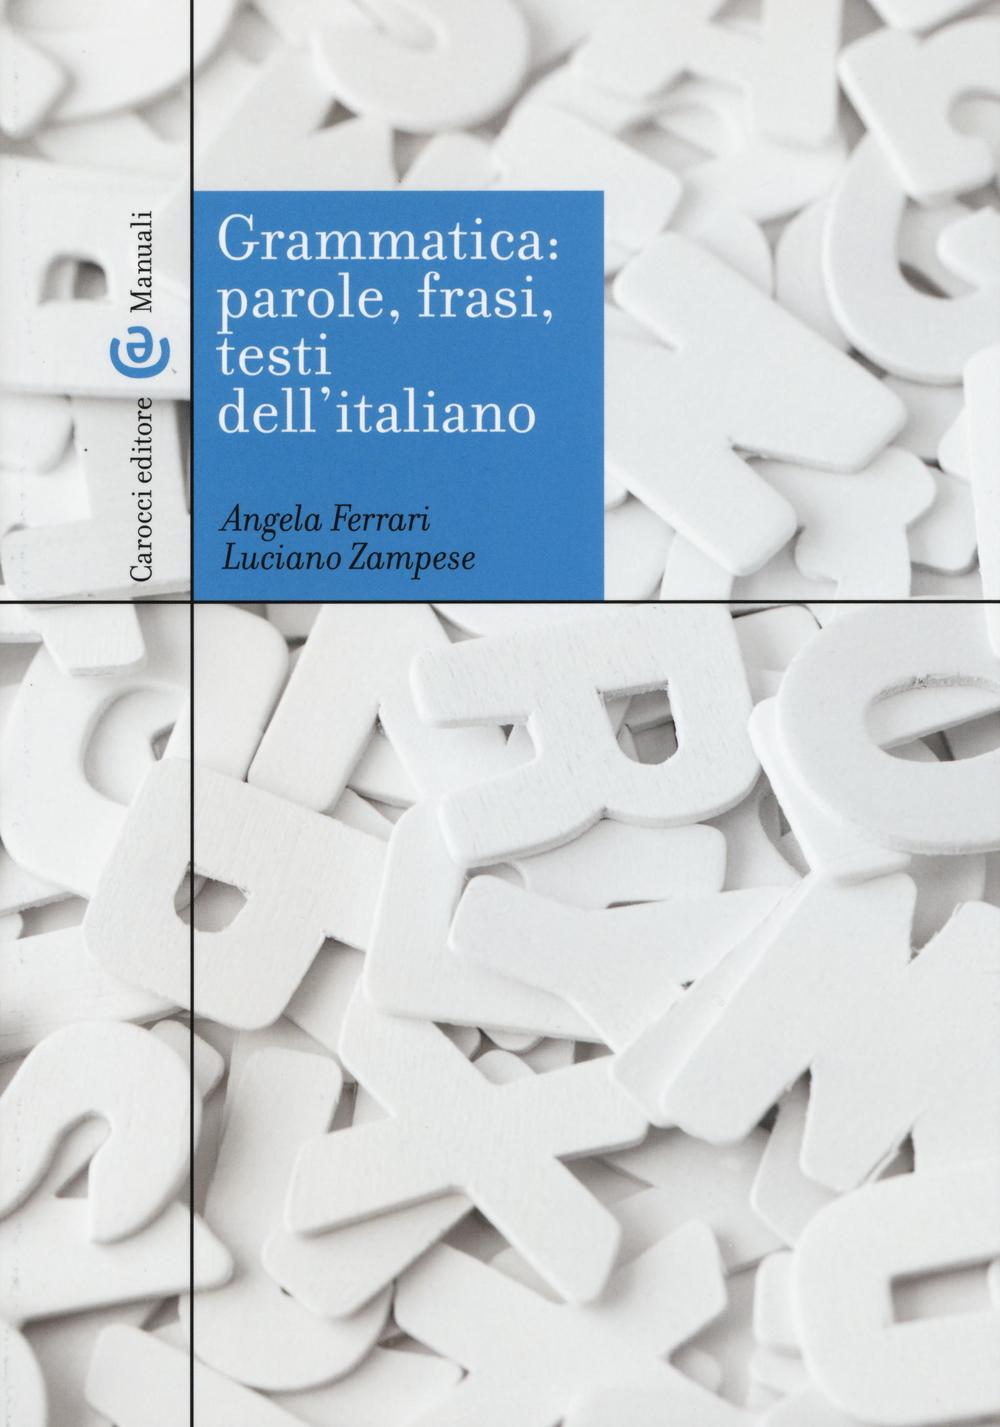 Kniha Grammatica: parole, frasi, testi dell'italiano Angela Ferrari